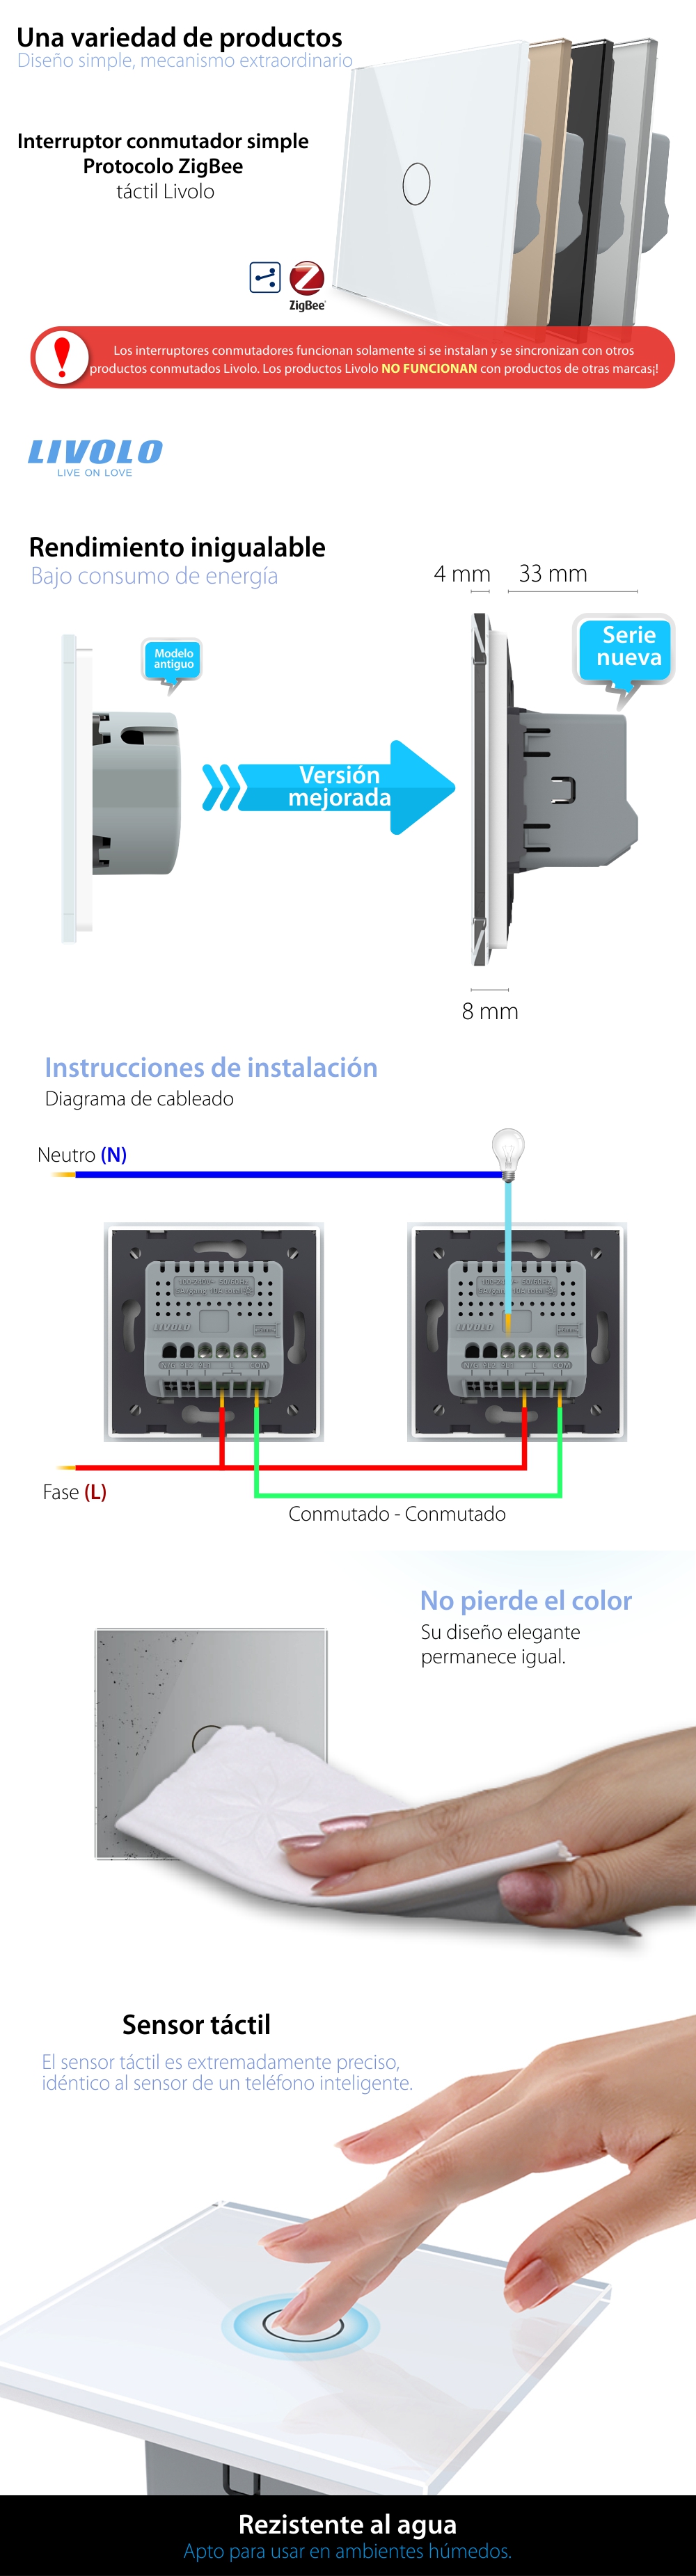 Interruptor conmutador táctil simple Livolo de vidrio – protocolo ZigBee, control en el teléfono móvil